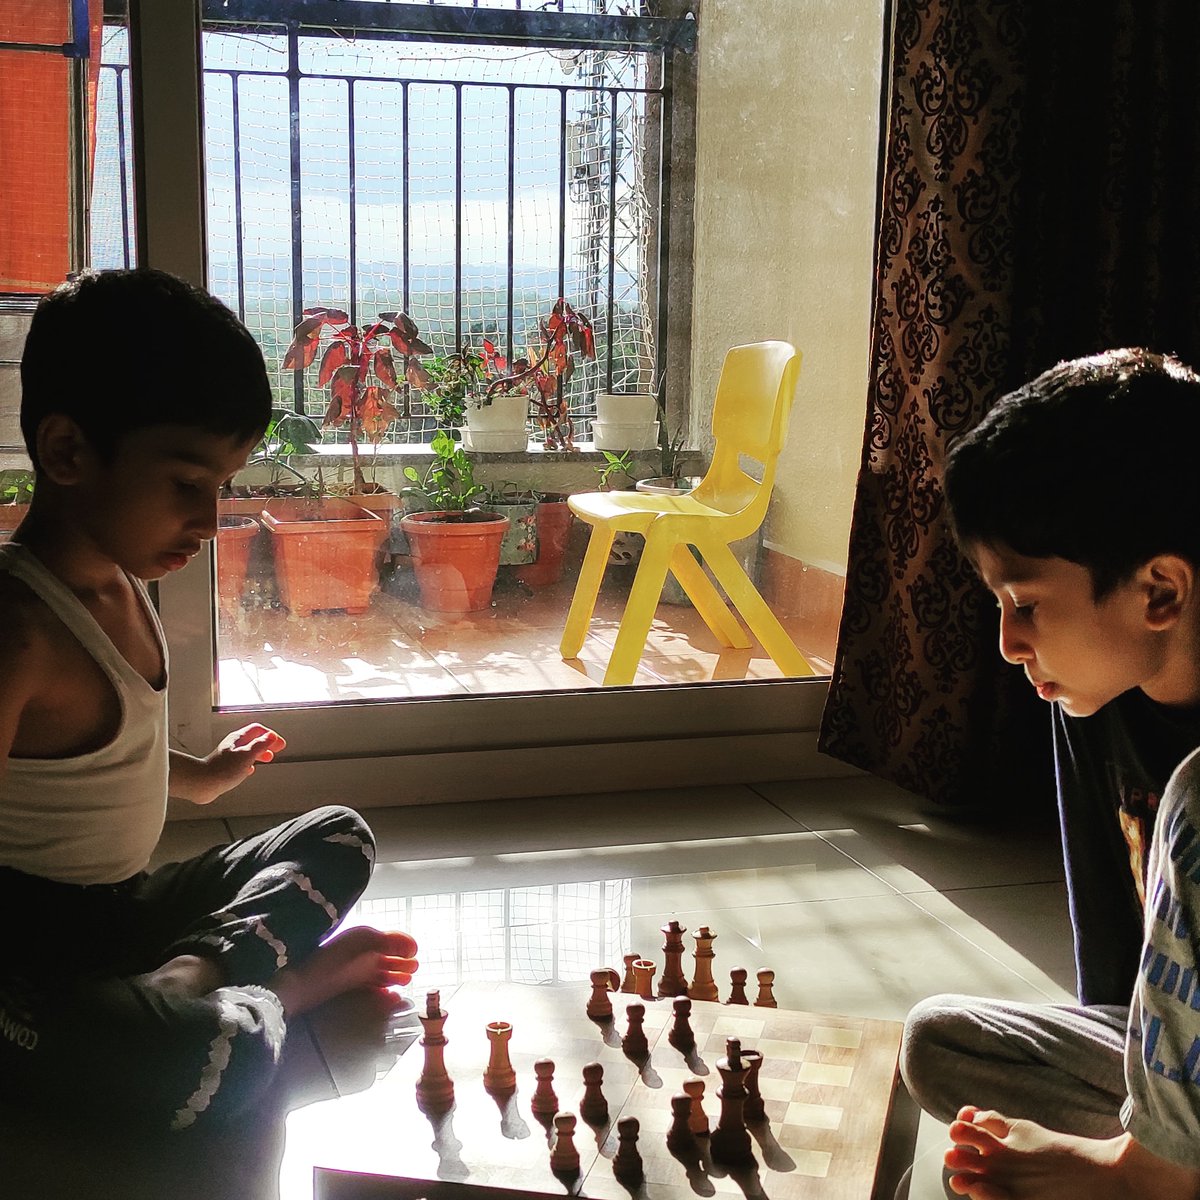 Happy International Chess Day!
#chess #chessday #internationalchessday